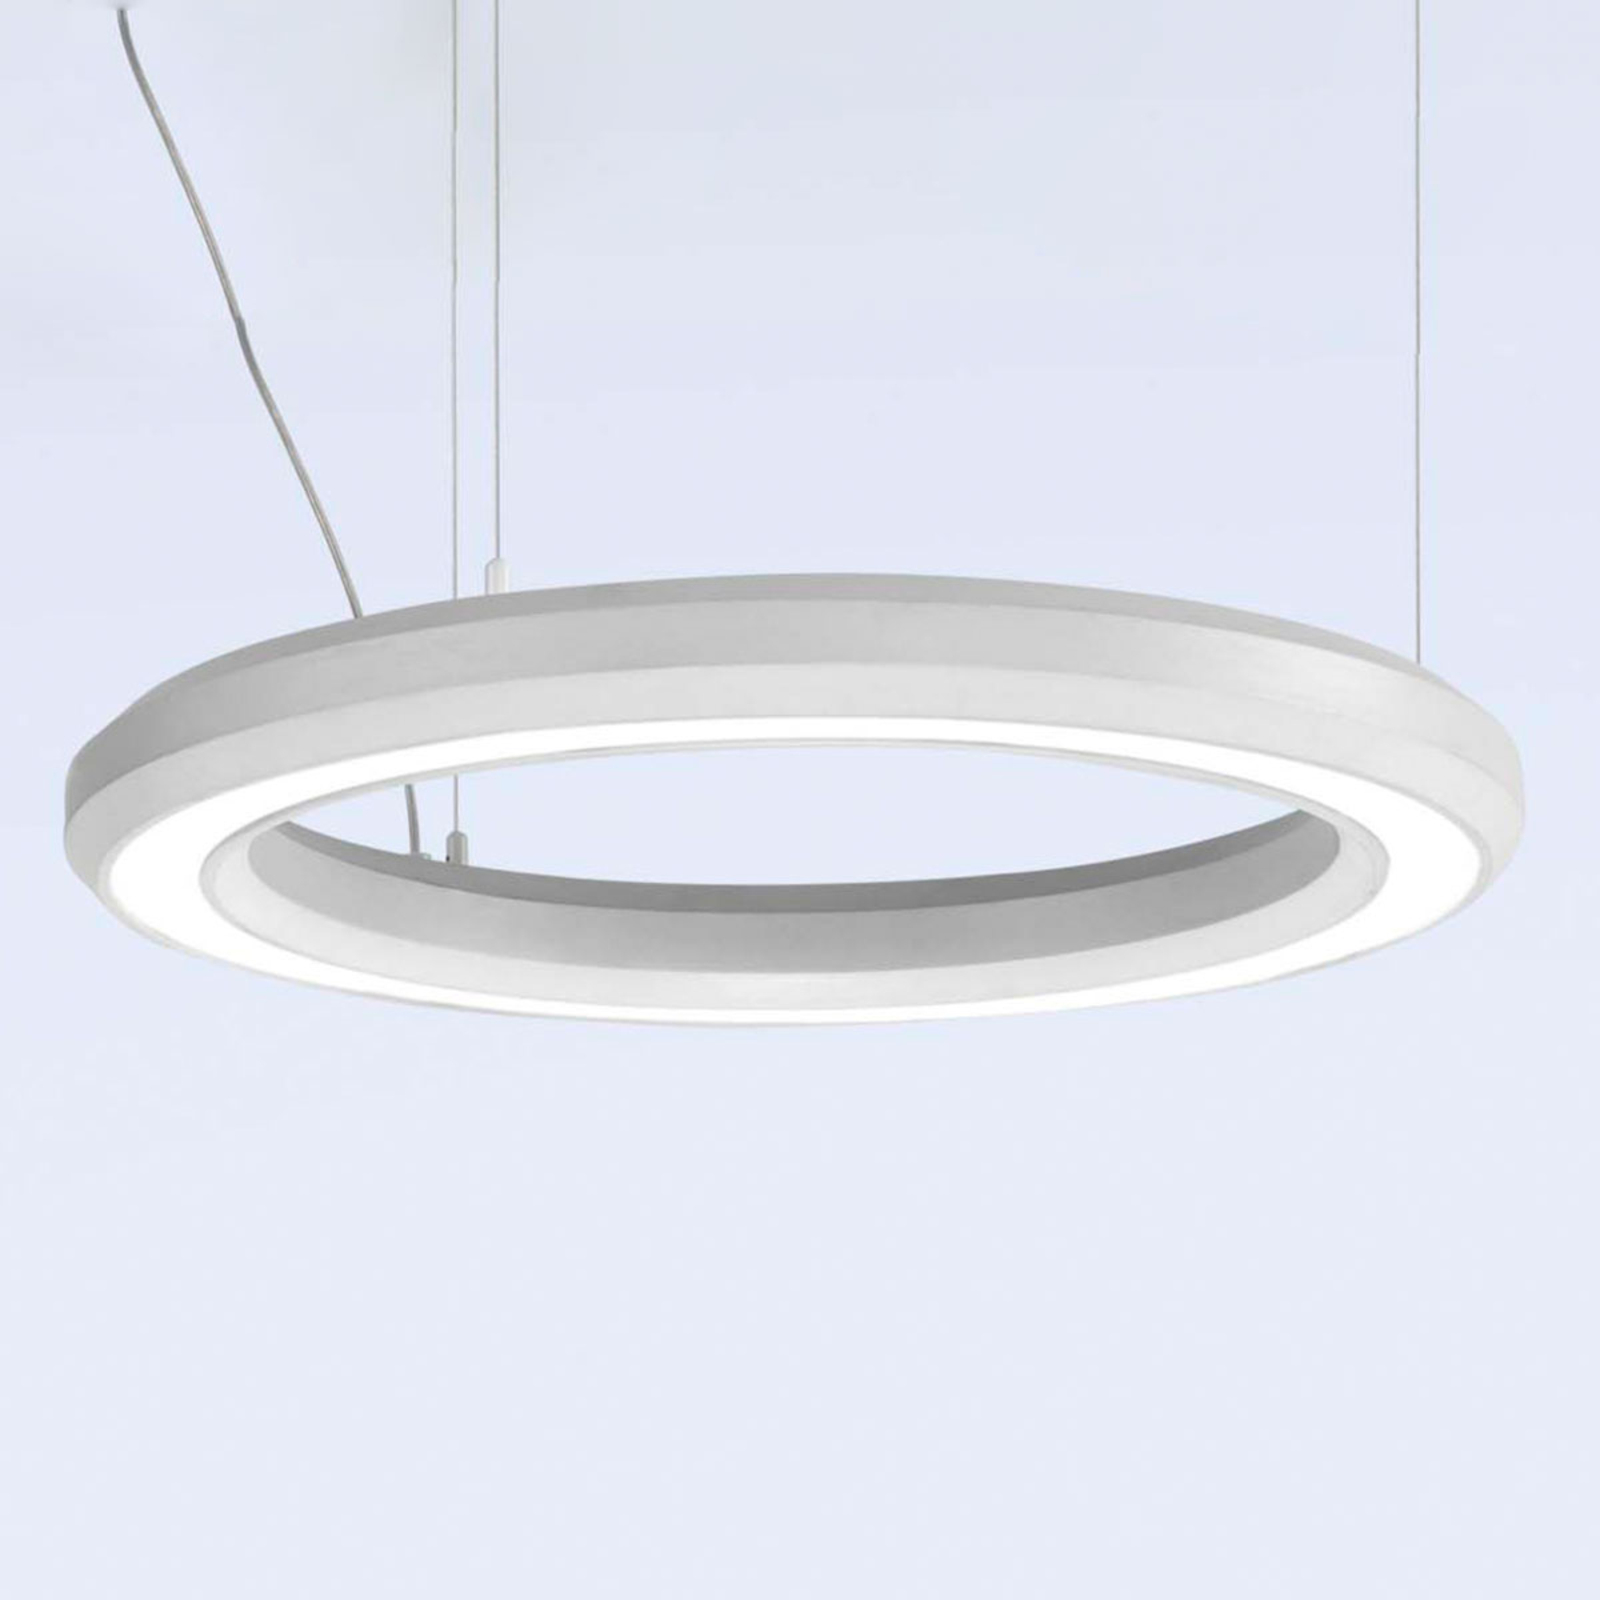 LED-riippuvalaisin Materica ala, Ø 60 cm valkoinen